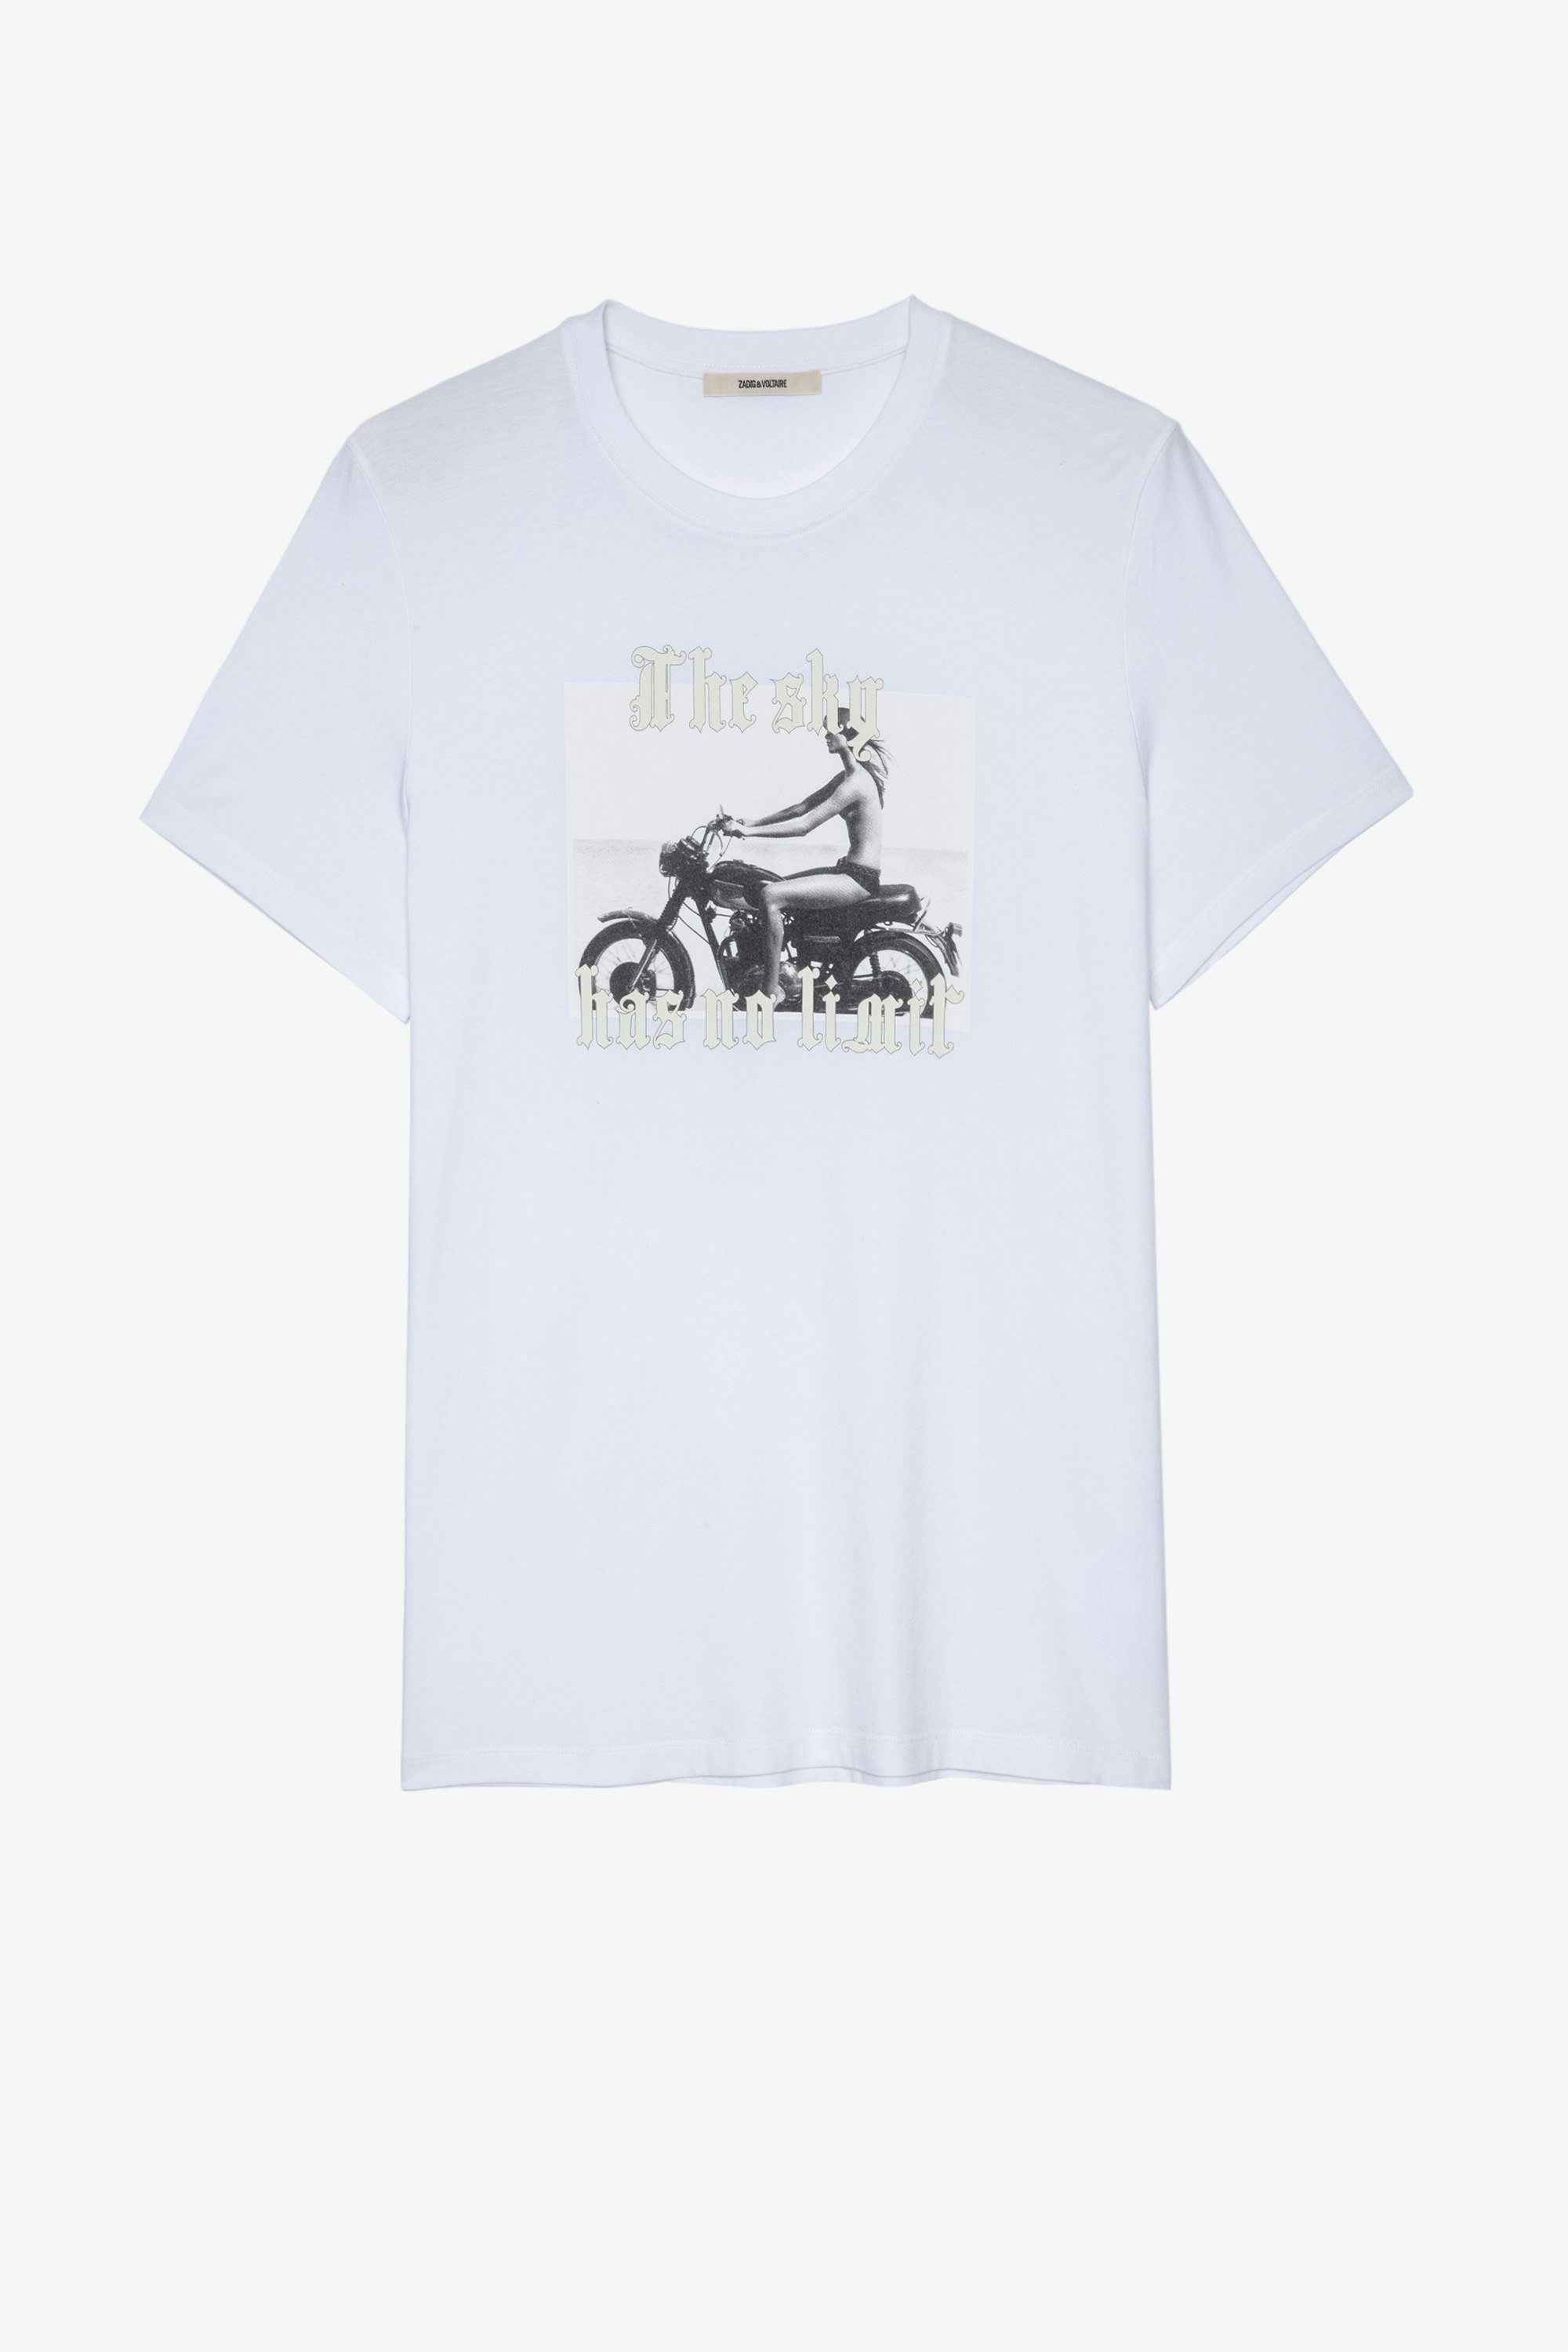 T-Shirt Ted Photoprint Weißes Herren-T-Shirt aus Baumwolle mit Fotoprint